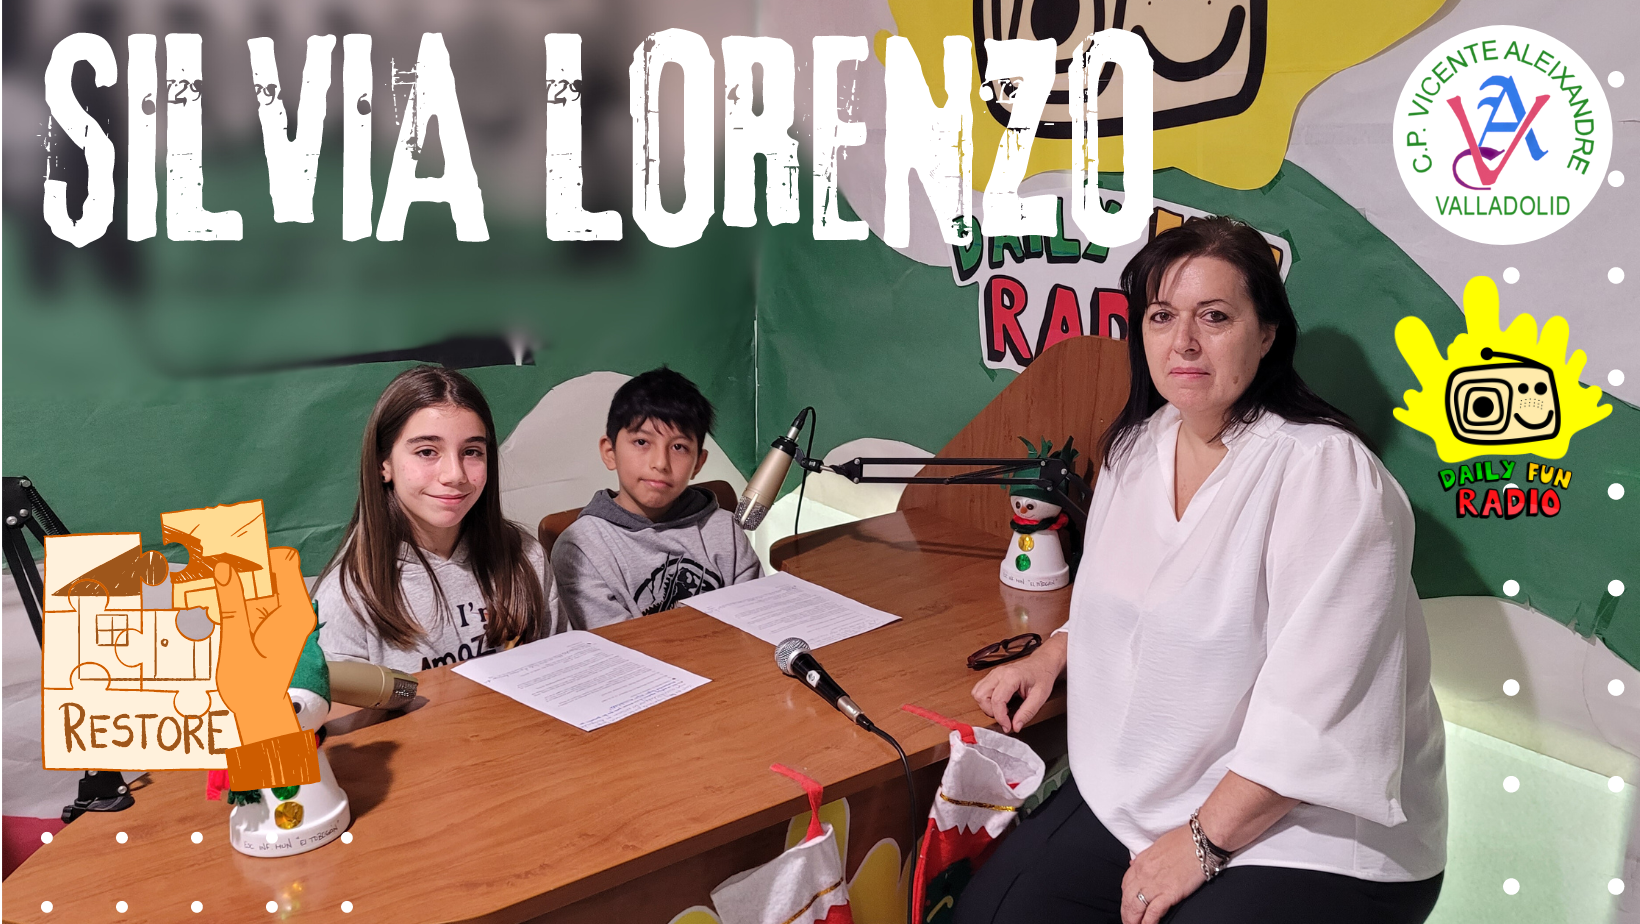 Daily Fun Radio Silvia Lorenzo